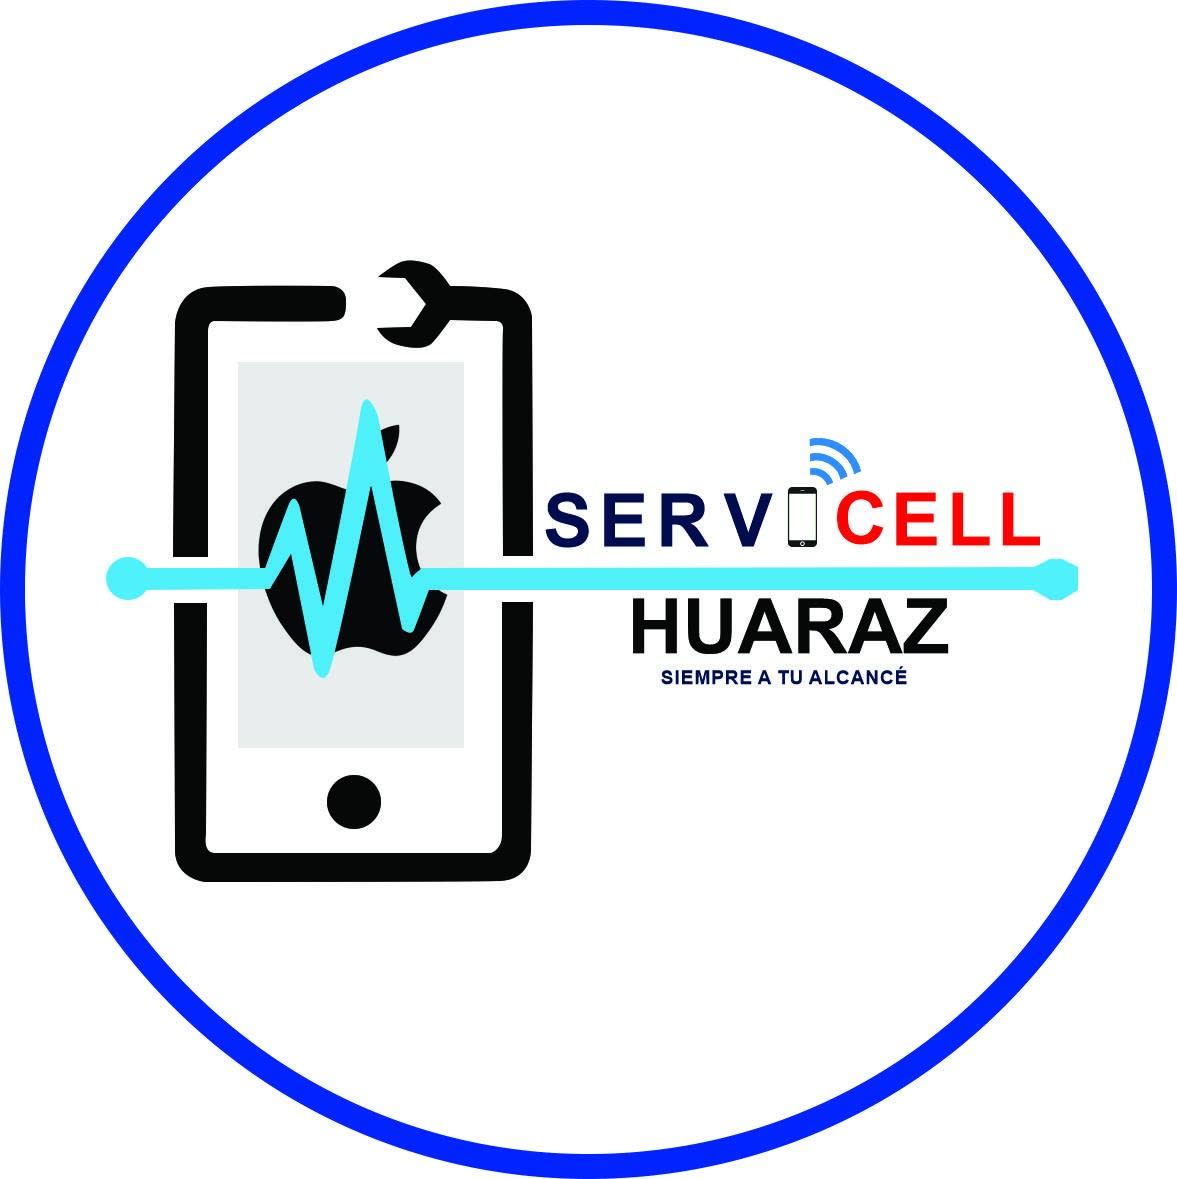 Servicell-Huaraz